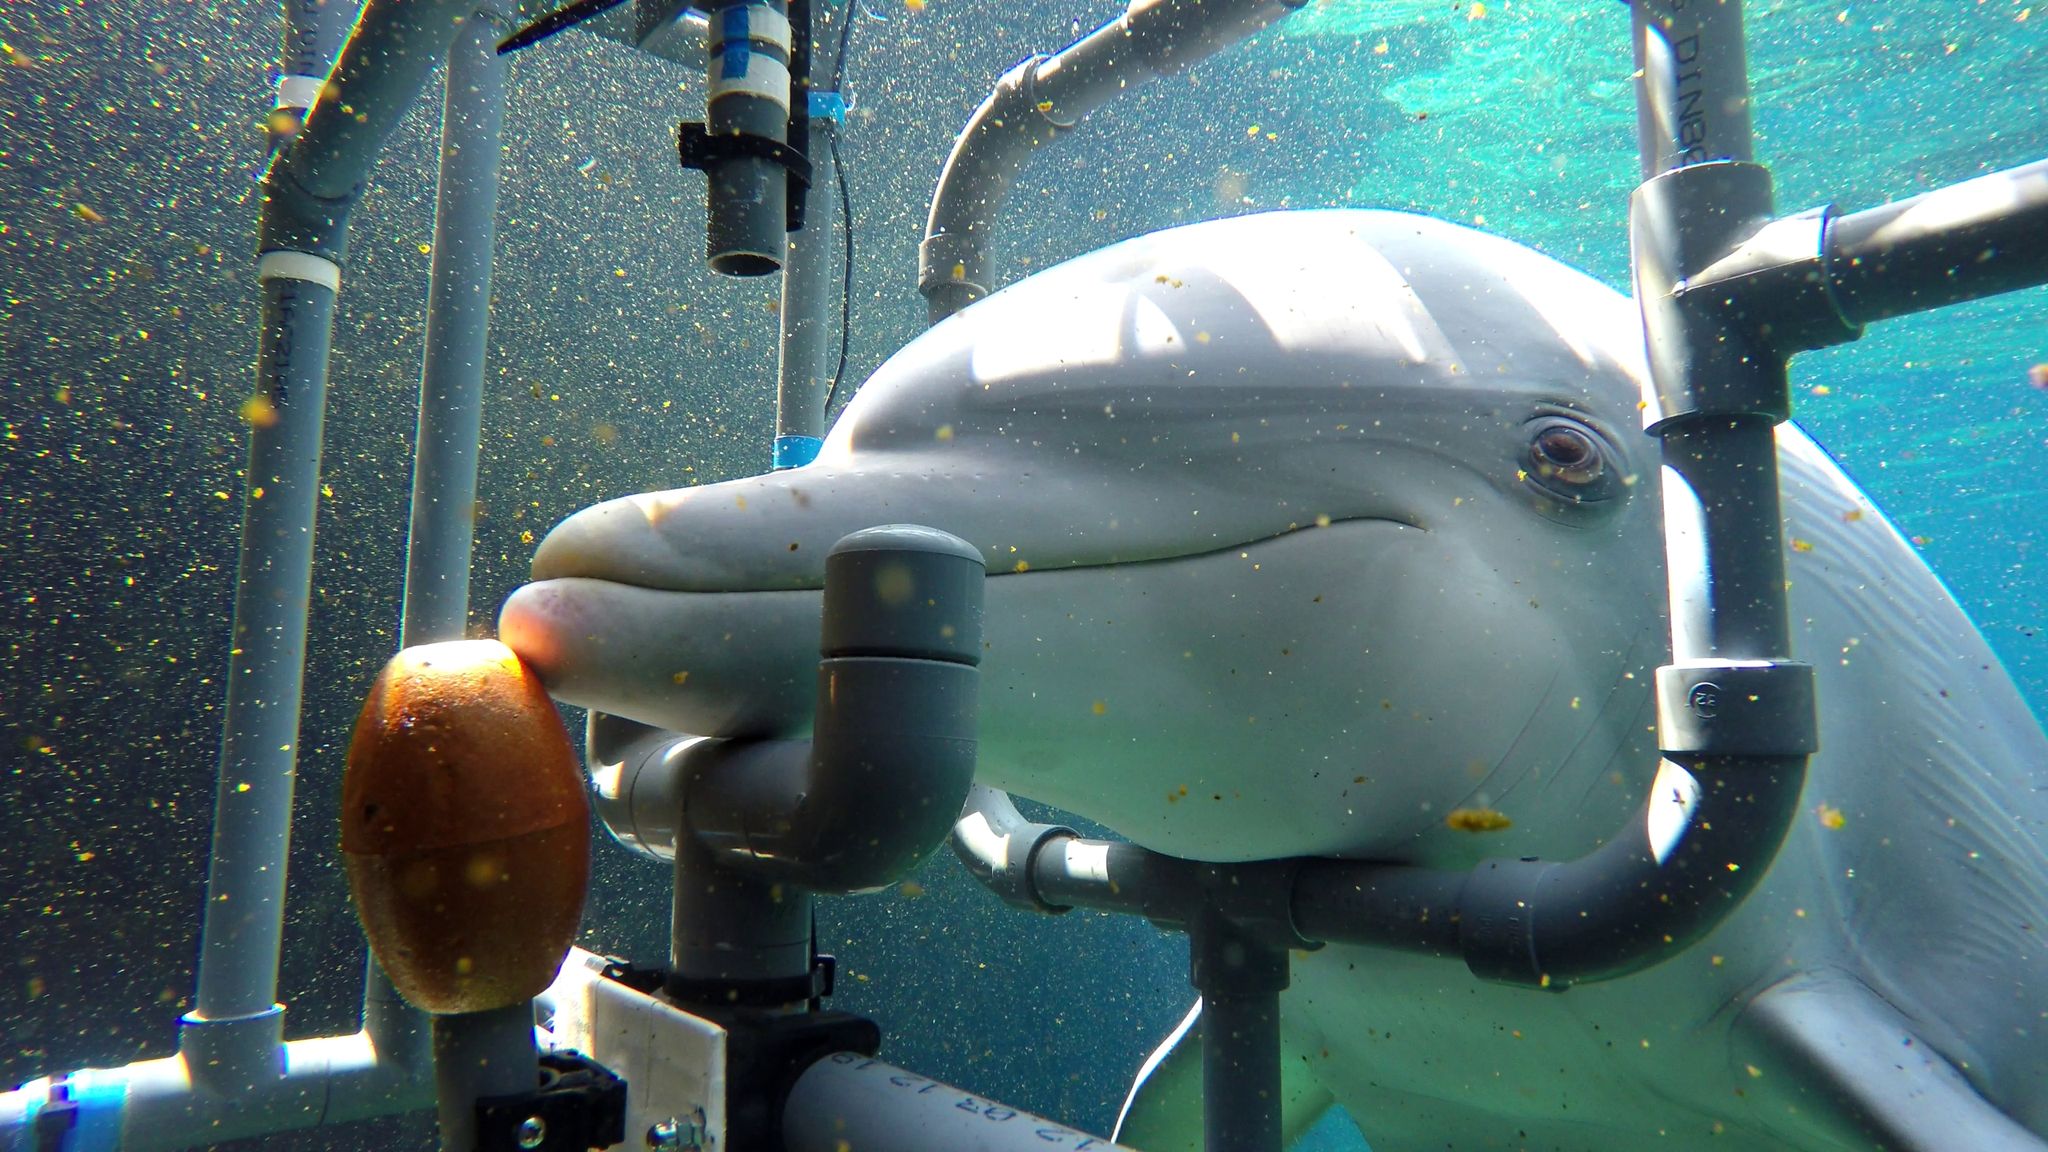 Der untersuchte Delphin Donna während des Trainings. Die Delfine können elektrische Gleichstromfelder wahrnehmen und entsprechend reagieren.